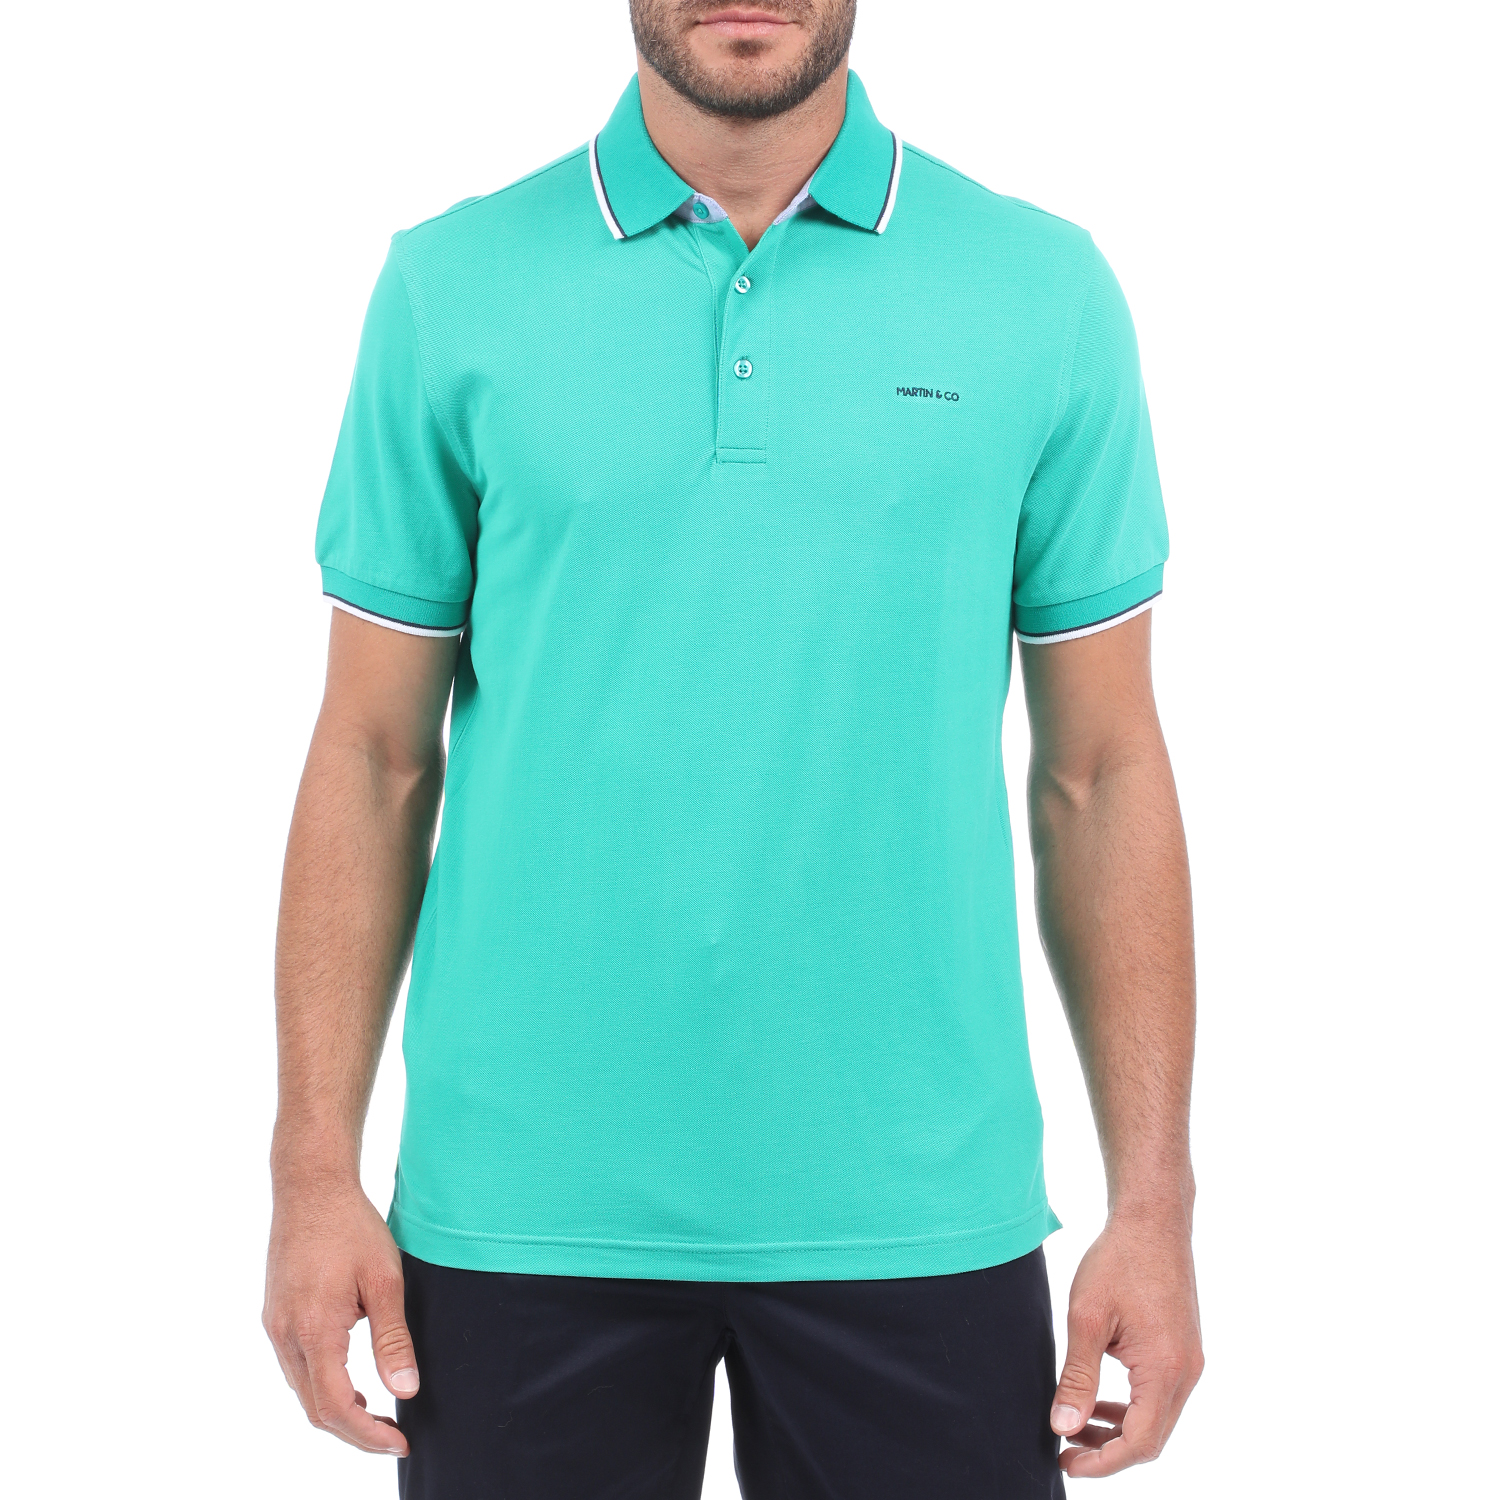 Ανδρικά/Ρούχα/Μπλούζες/Πόλο MARTIN & CO - Ανδρική polo μπλούζα MARTIN & CO πράσινη